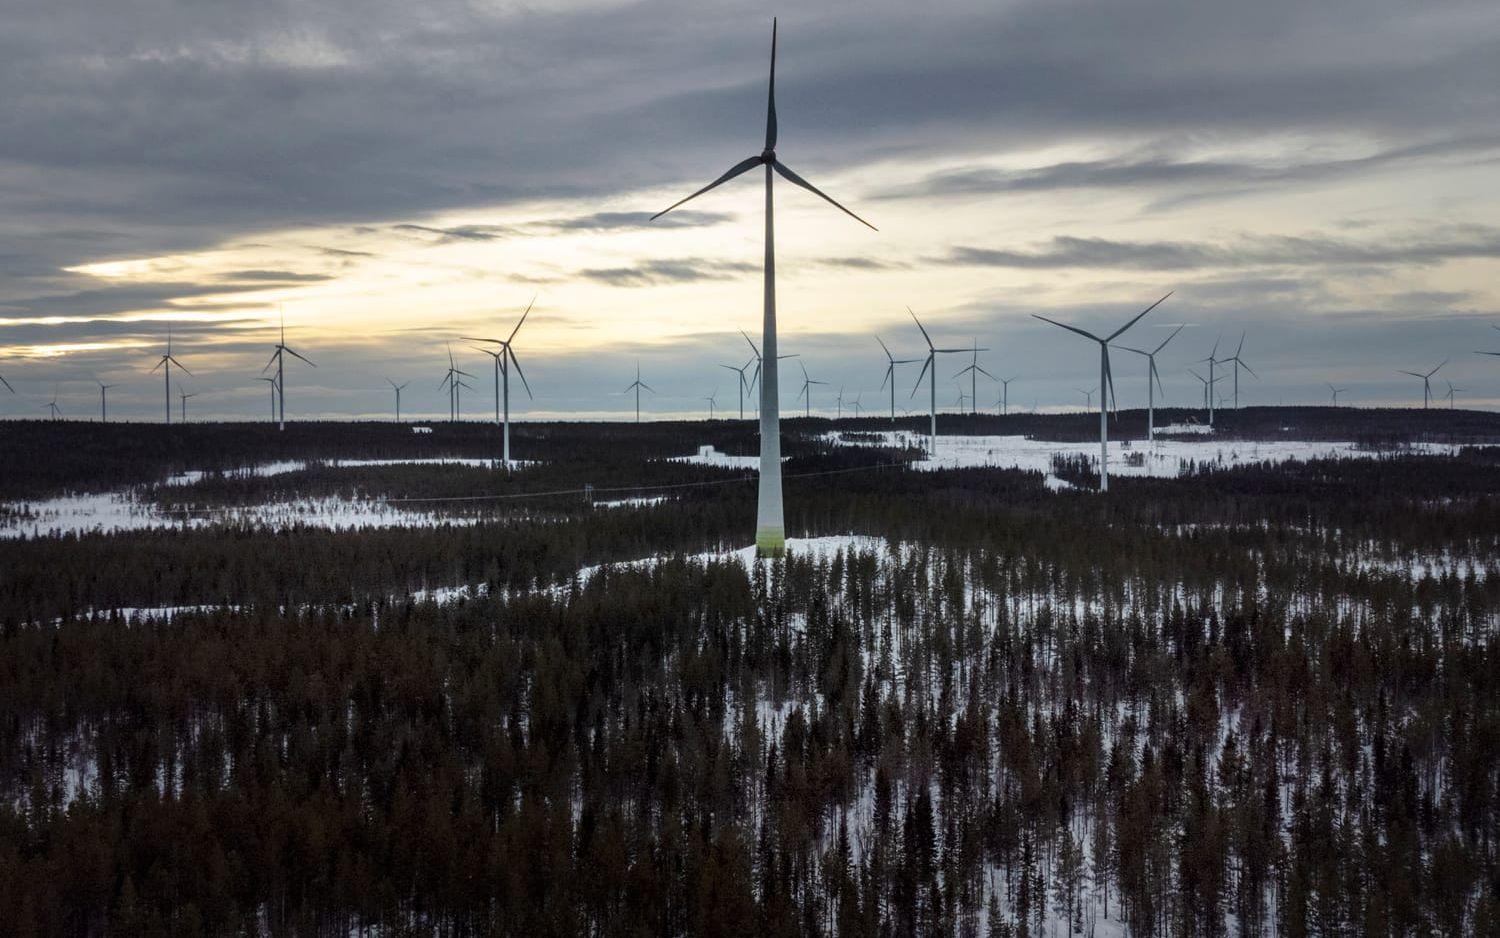 Utbyggnaden av vindkraft har kraftigt kompenserat för stängningen av kärnkraftverk, sett till Sveriges totala elproduktion, rapporterar SVT.